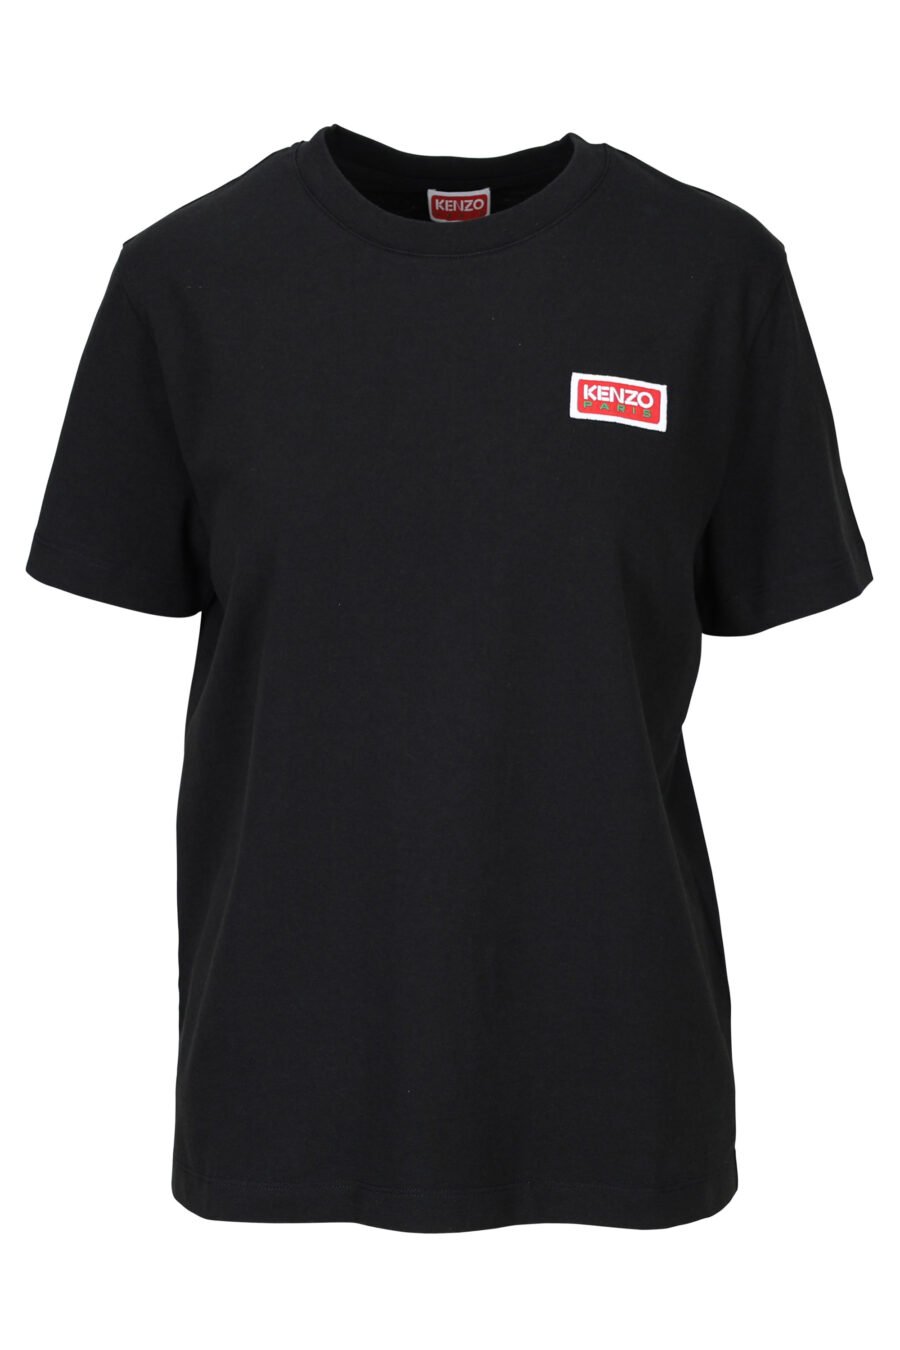 T-shirt preta oversize com o logótipo "kenzo paris" - 3612230520769